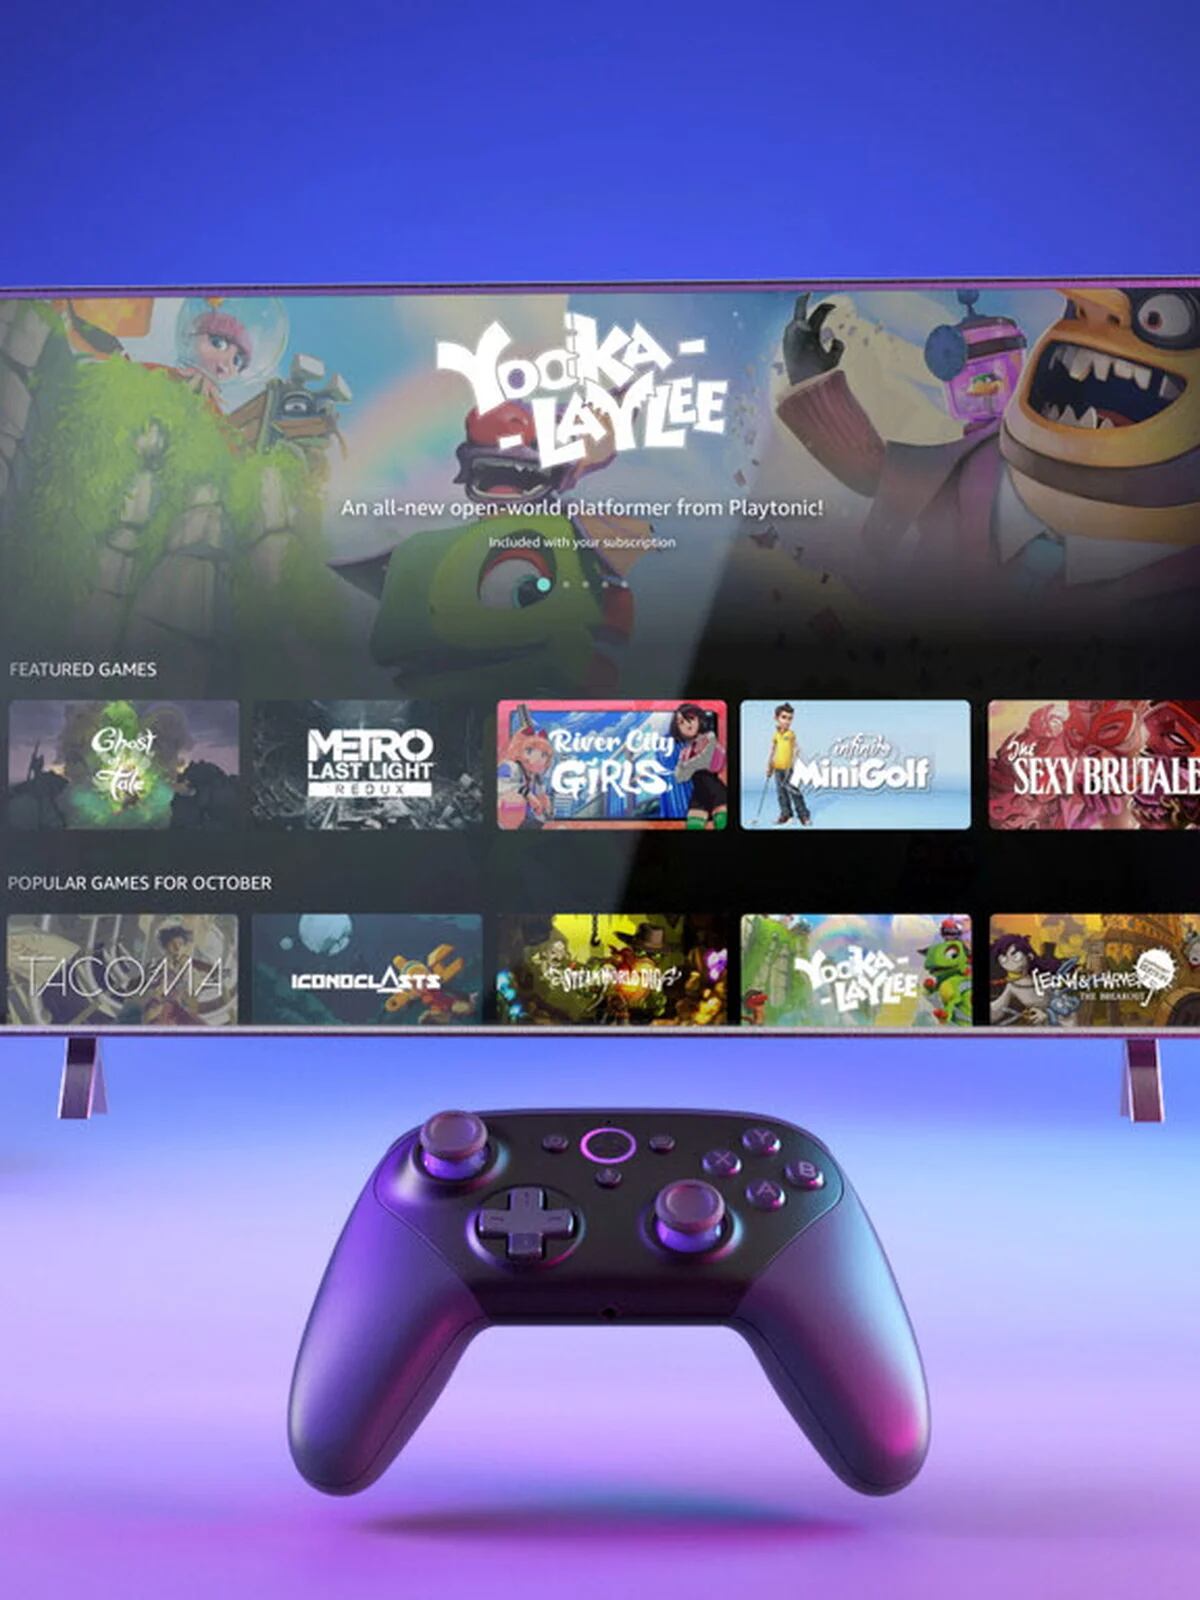 Luna es el nuevo servicio de videojuegos en streaming